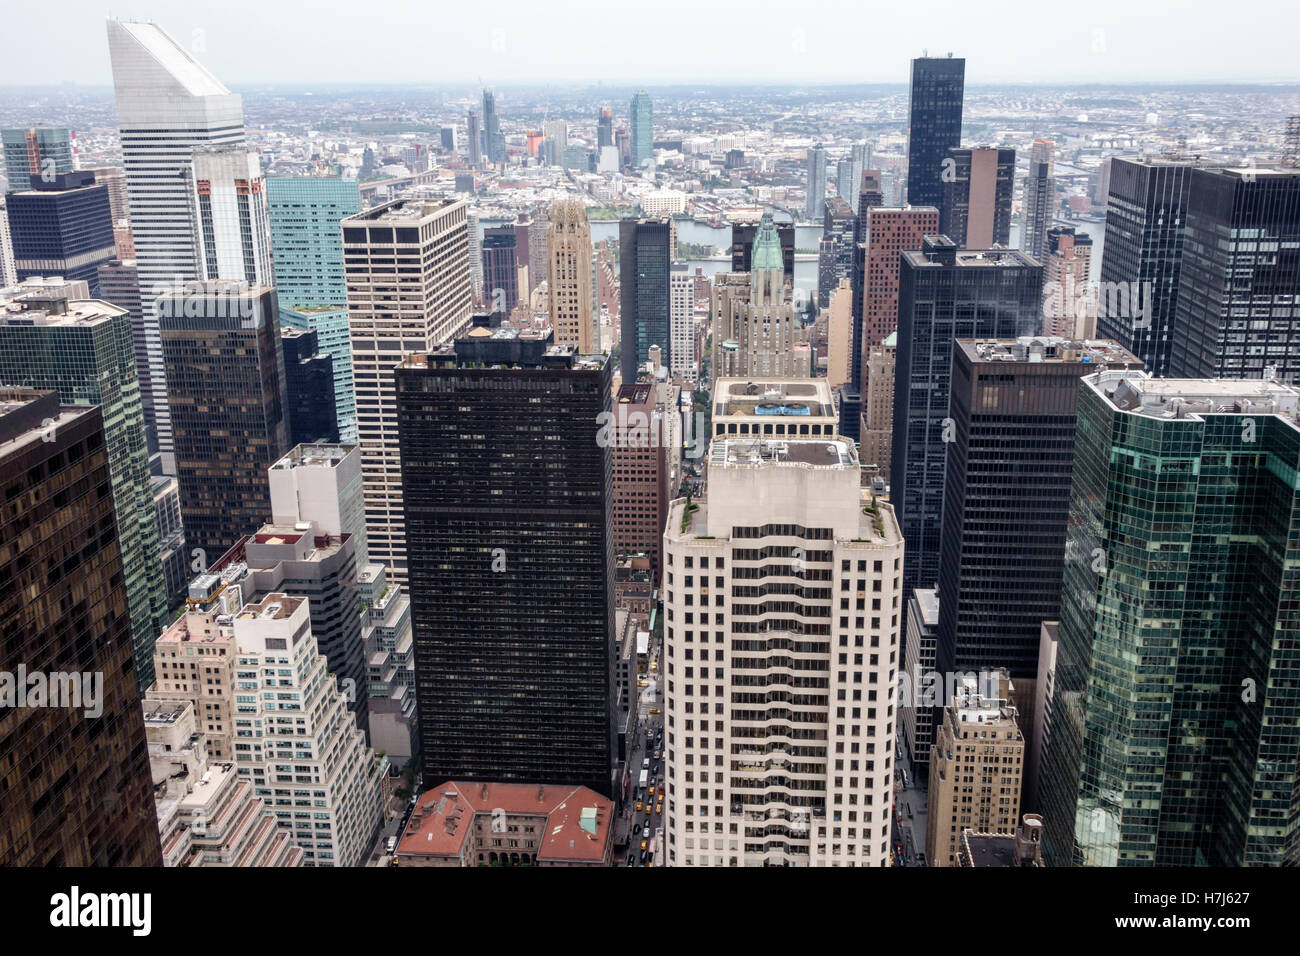 Ciudad de Nueva York, NY NYC Manhattan, Midtown, 30 Rockefeller Center, edificio GE, Top of the Rock, plataforma de observación, horizonte, rascacielos, NY160719137 Foto de stock